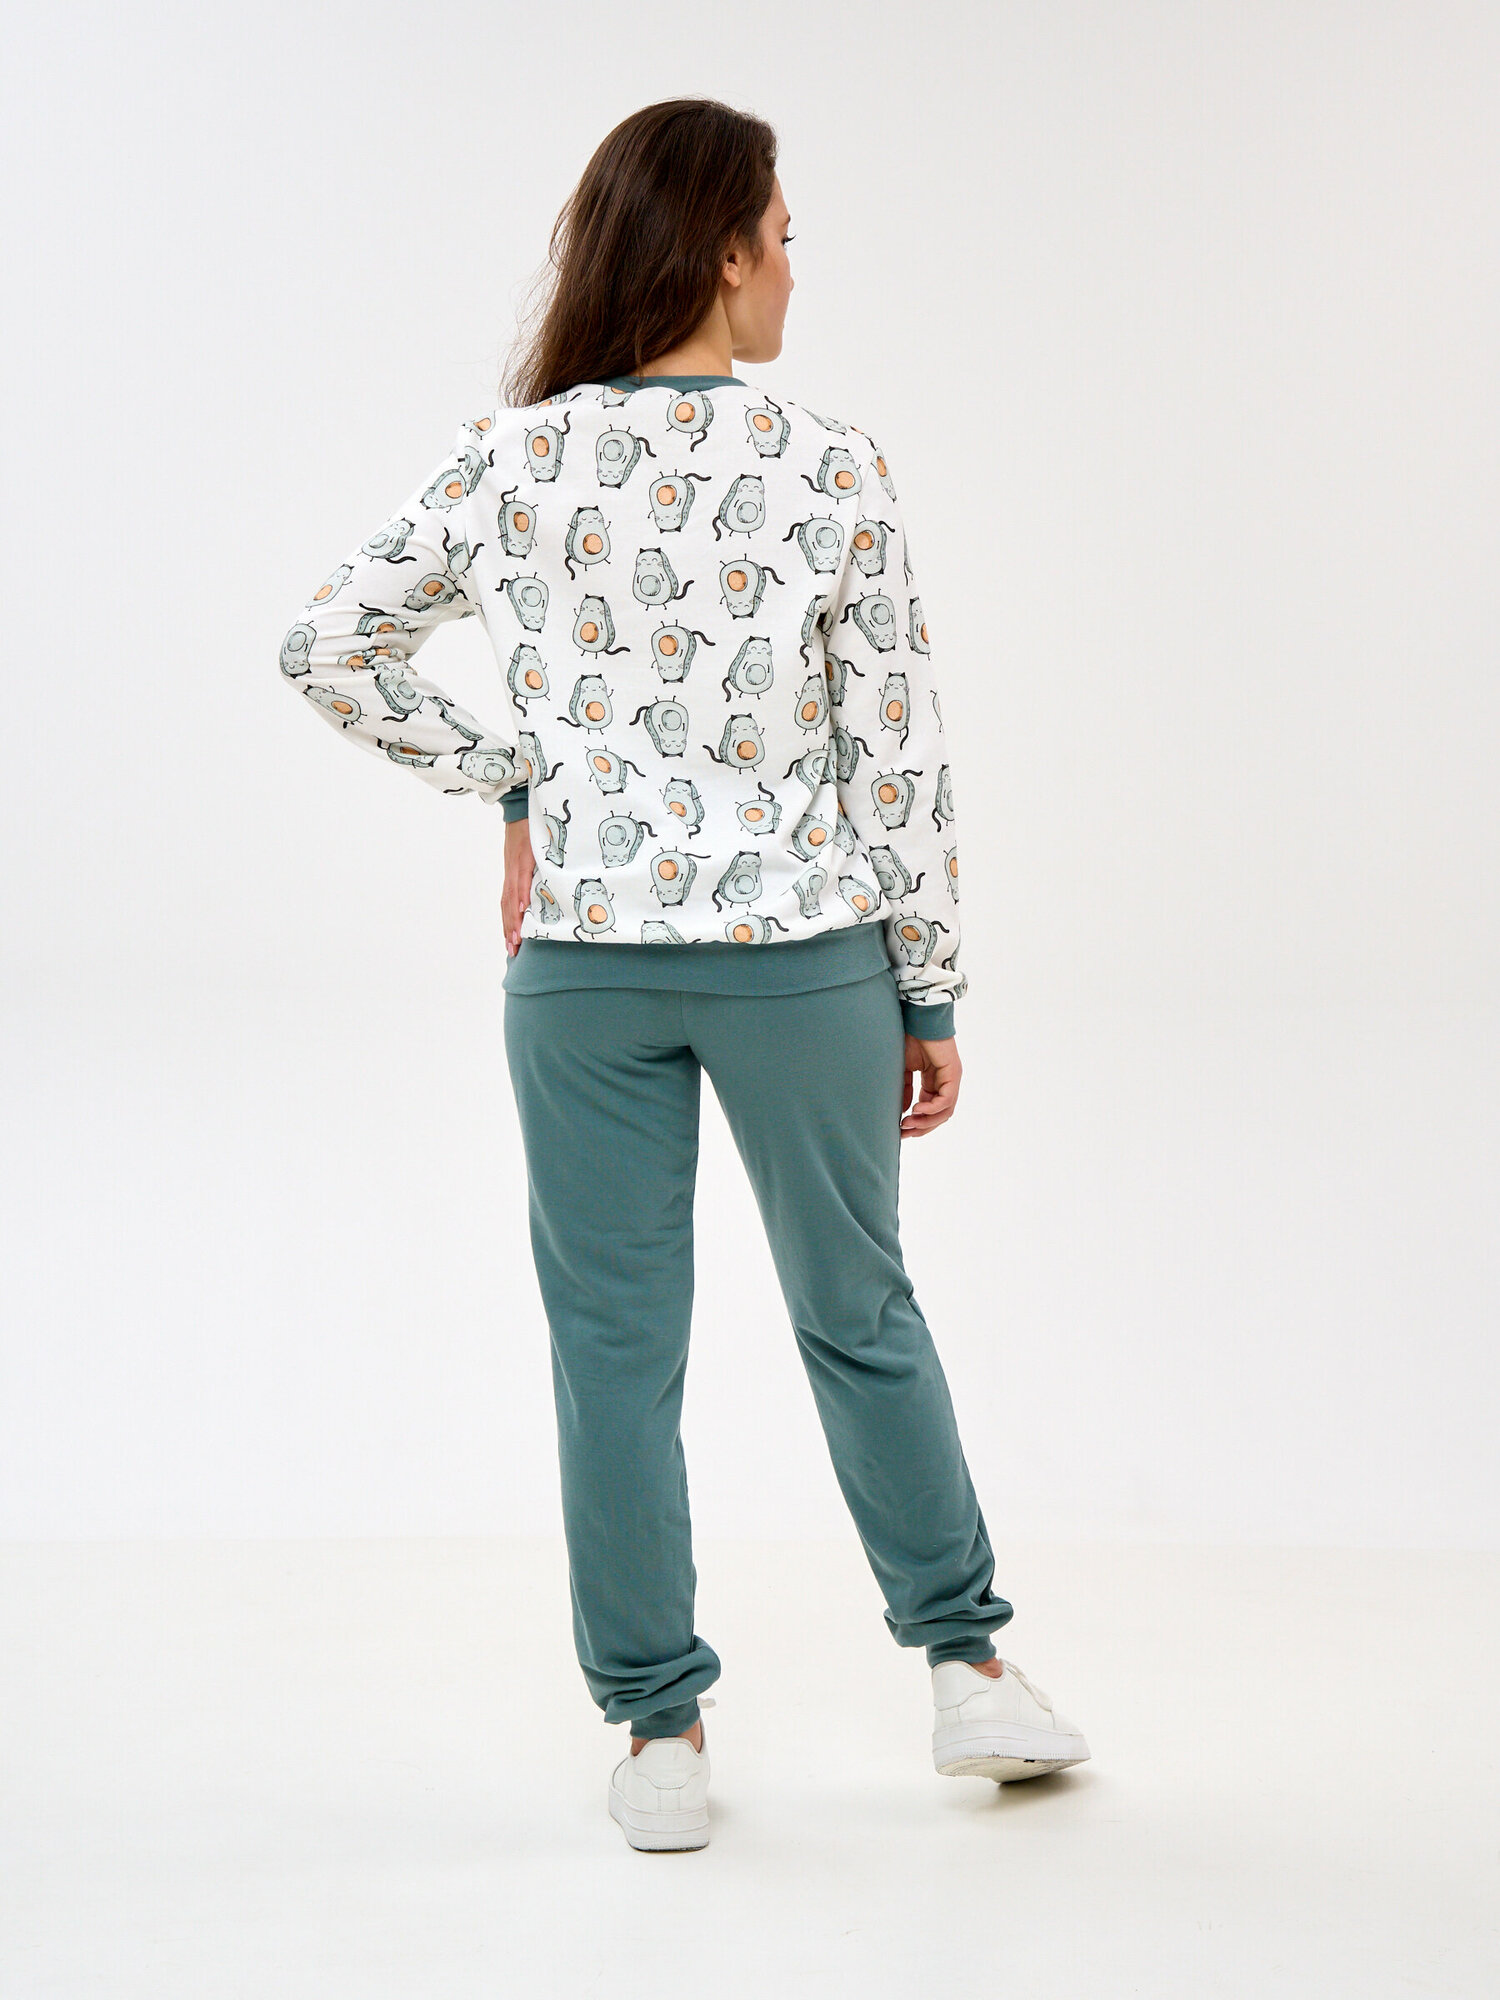 Пижама Монотекс, размер 46, белый, зеленый - фотография № 7